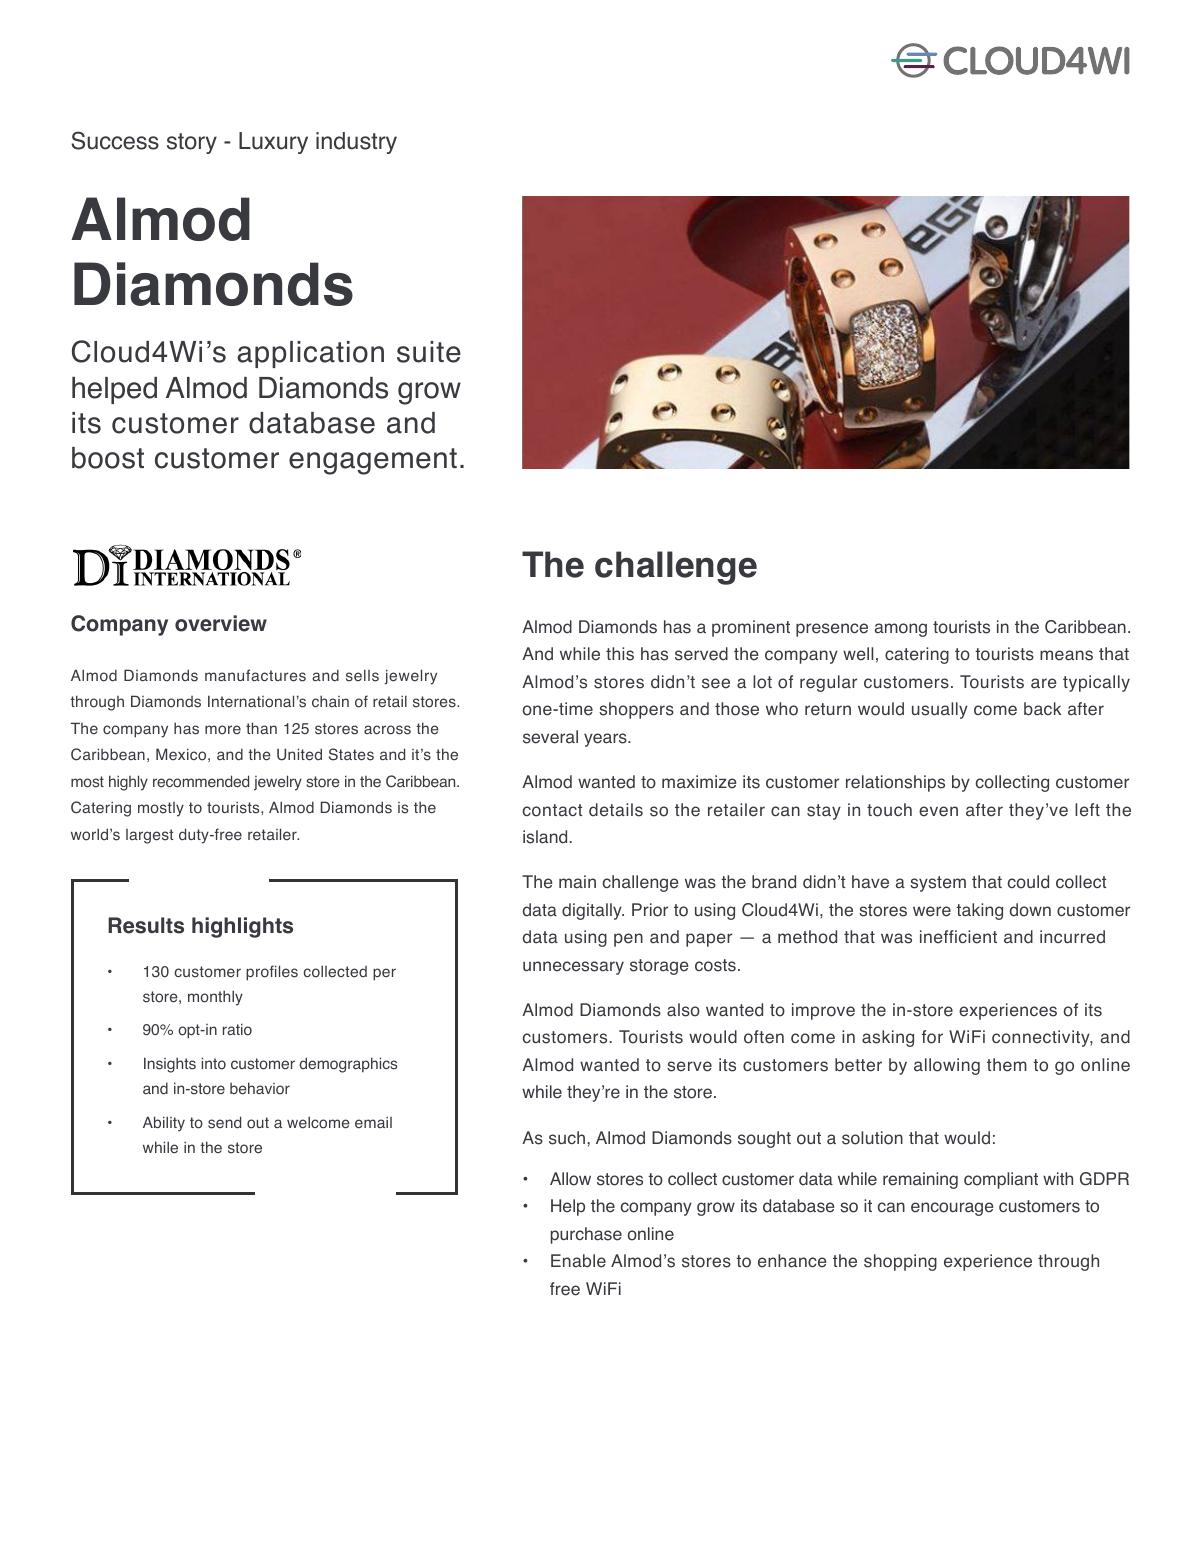 Almod Diamonds Success Story